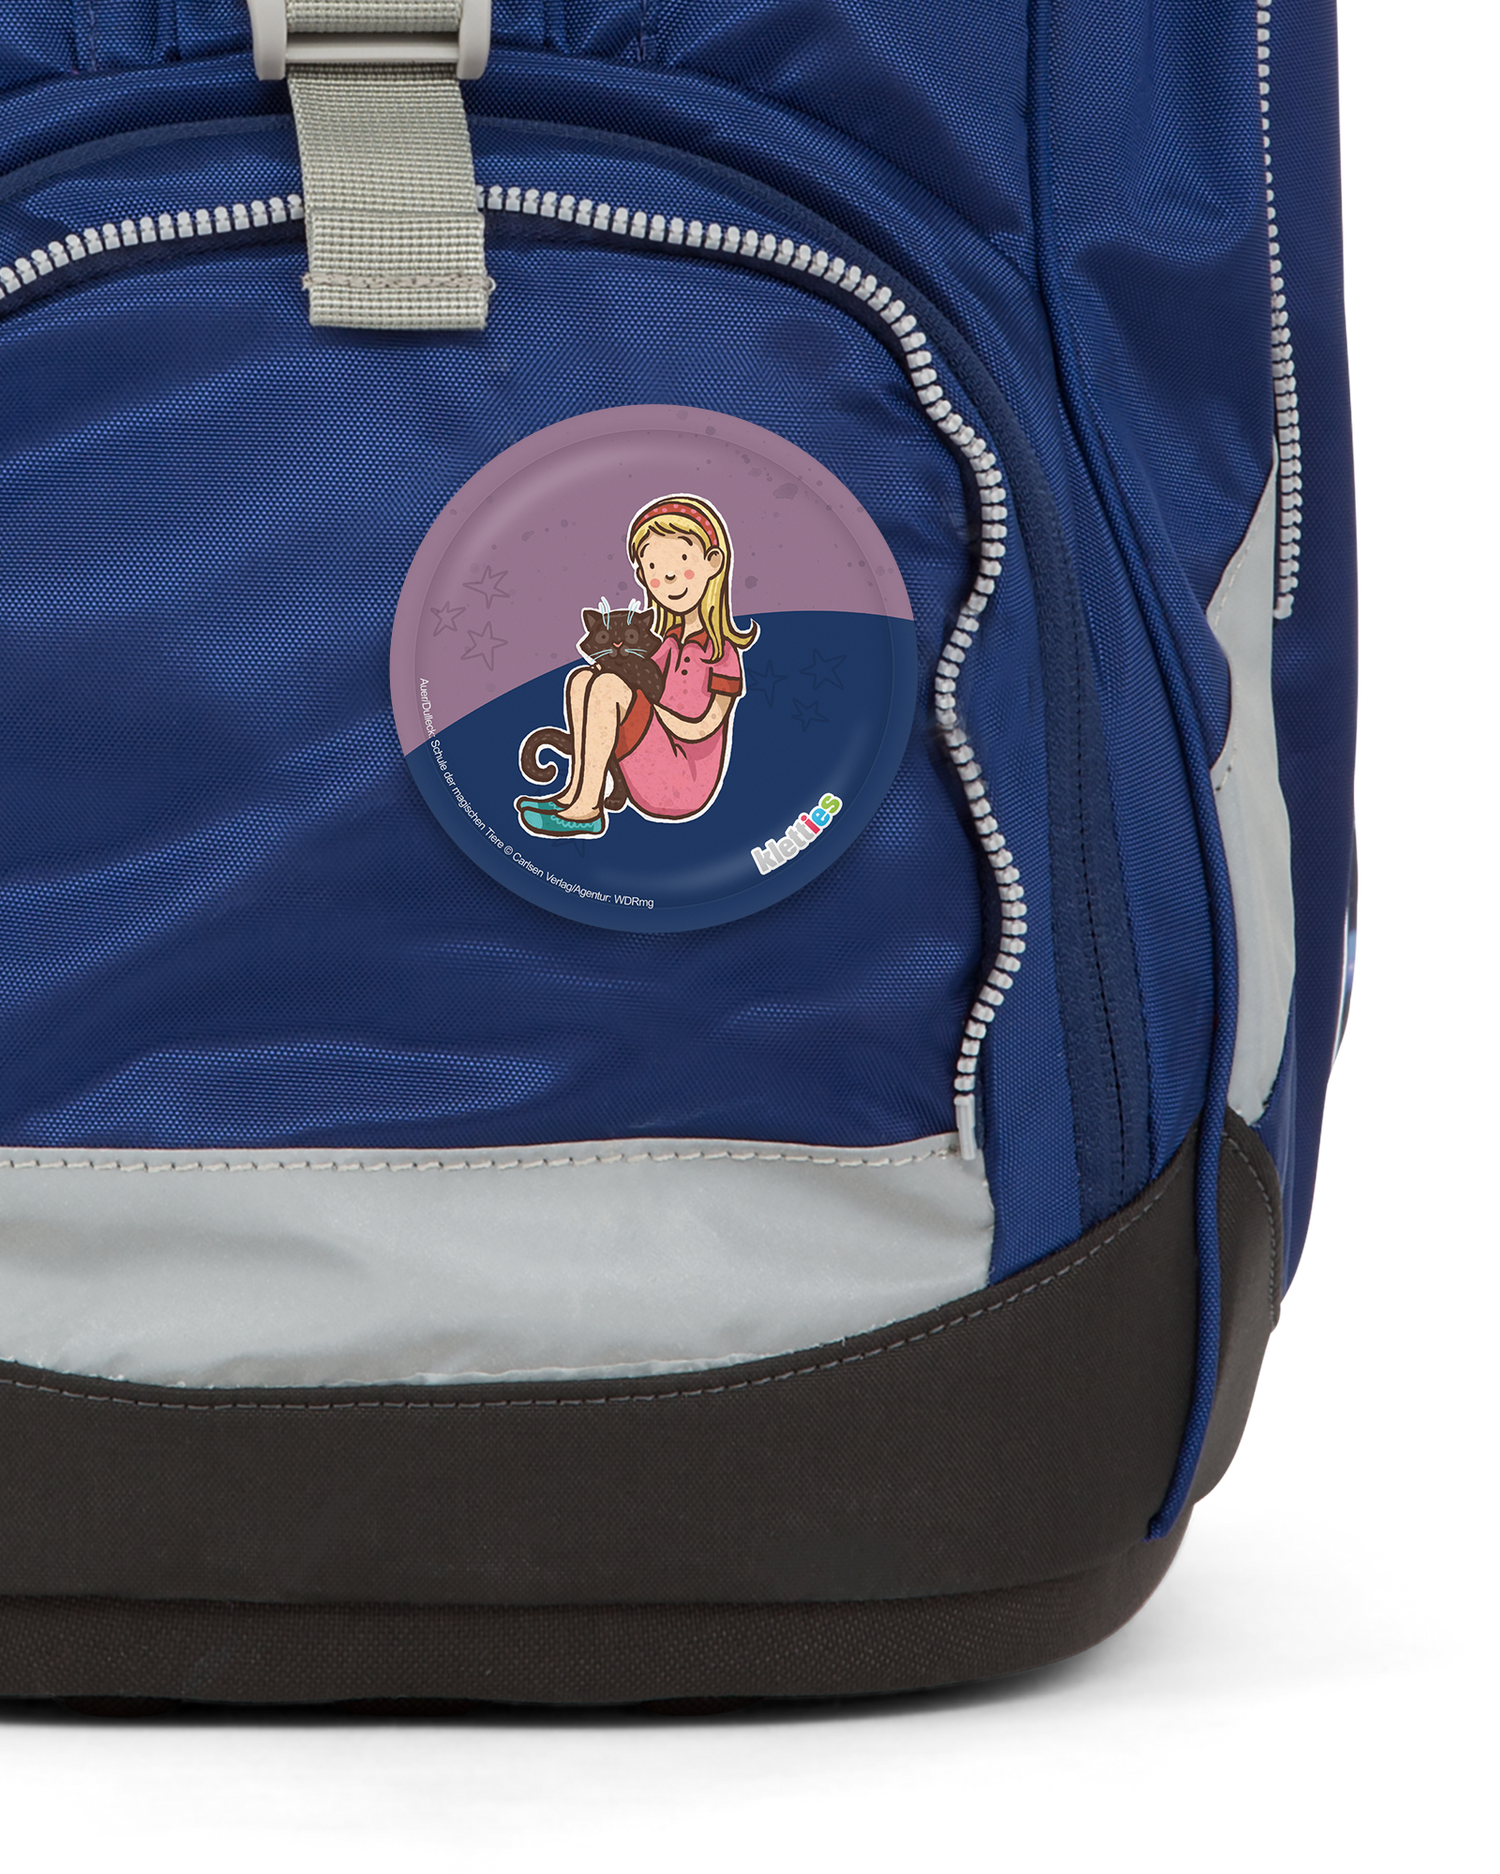 SdmT Helene Karajan Klettie: Detail shot on an ergobag backpack